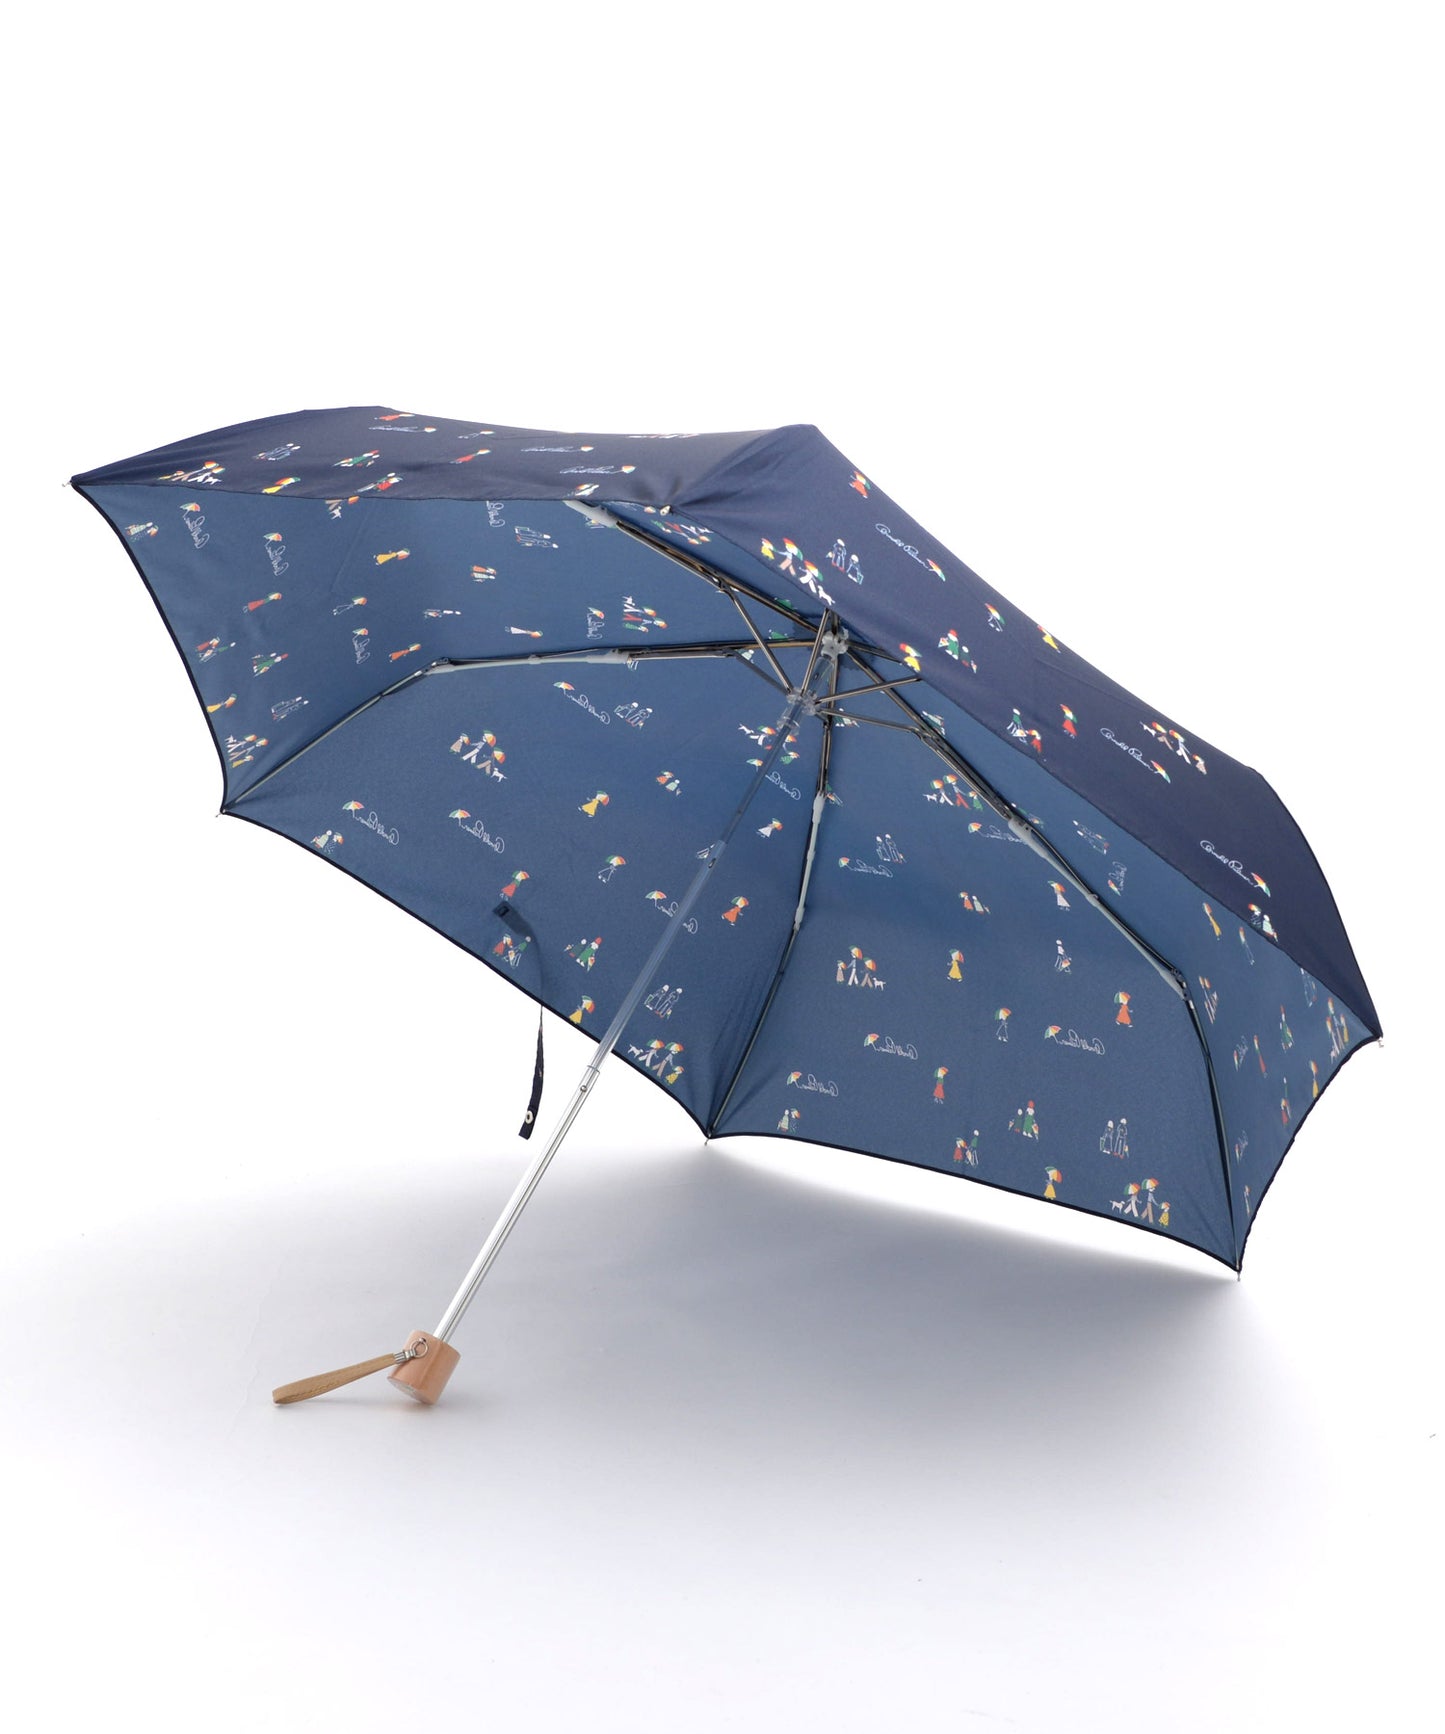 【残り3点】アート総柄晴雨兼用シェア折り畳み傘